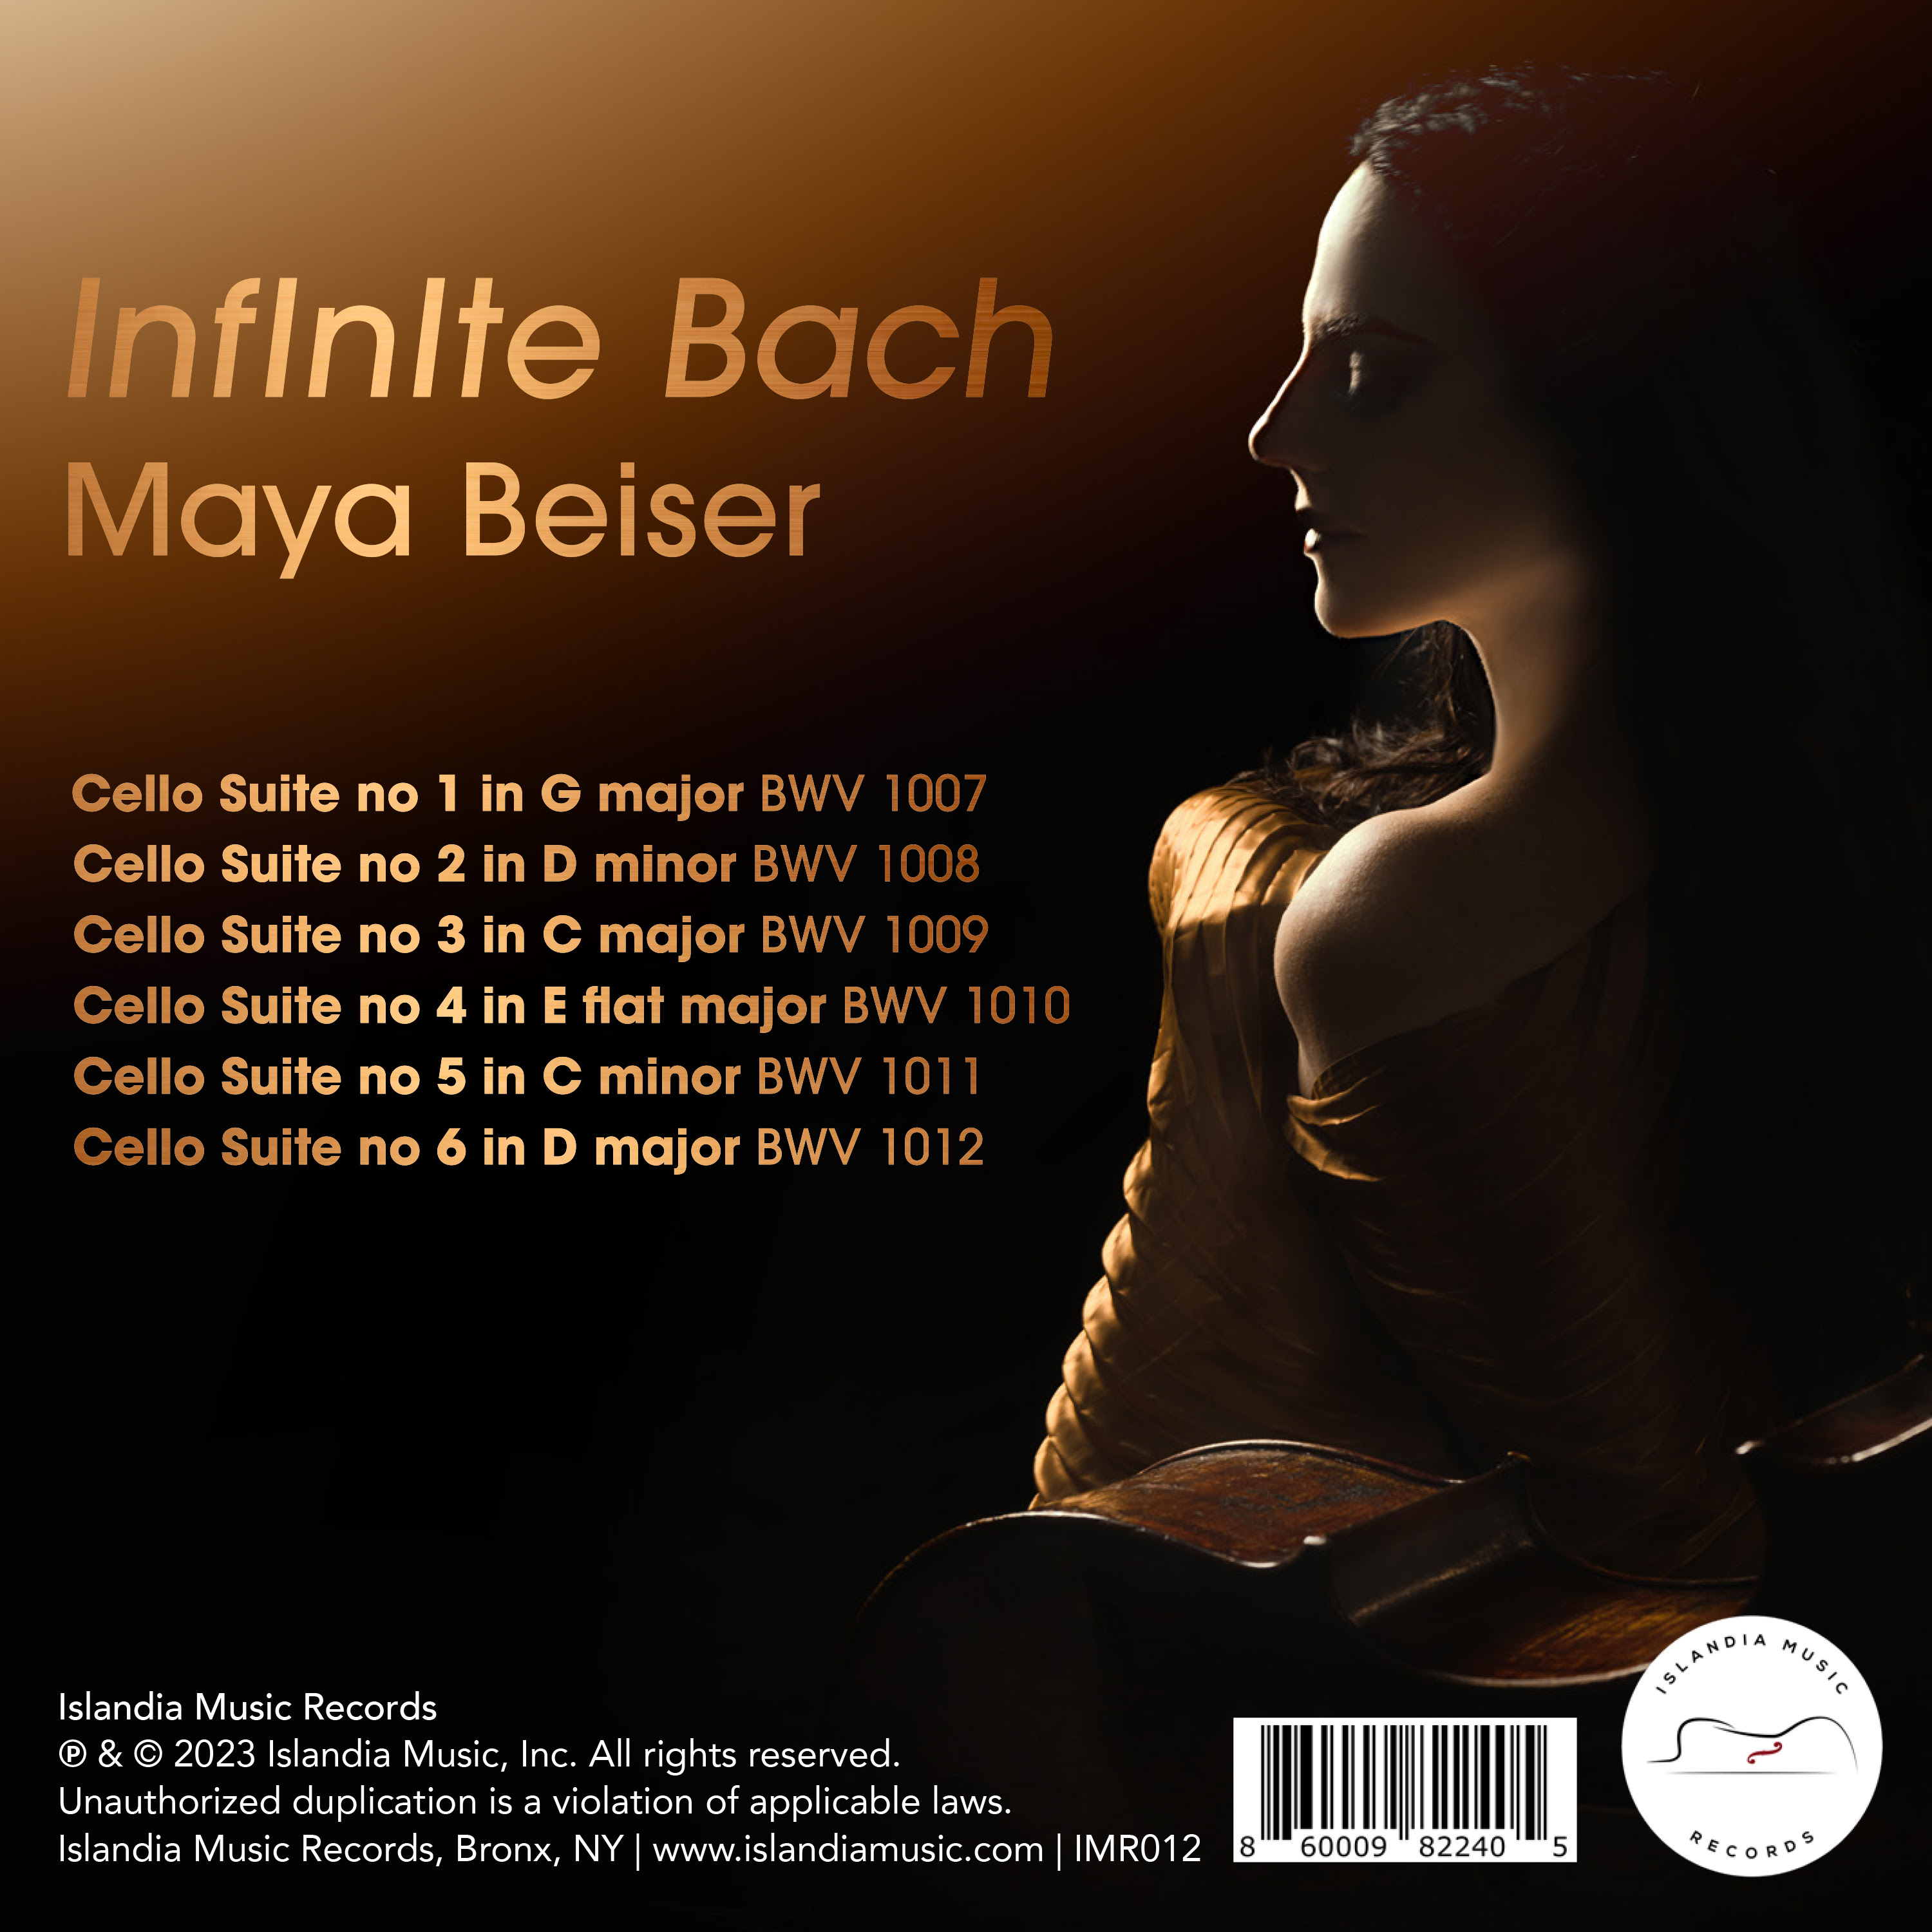 IMR012_InfInIte_Bach-album-back-cover.jpg